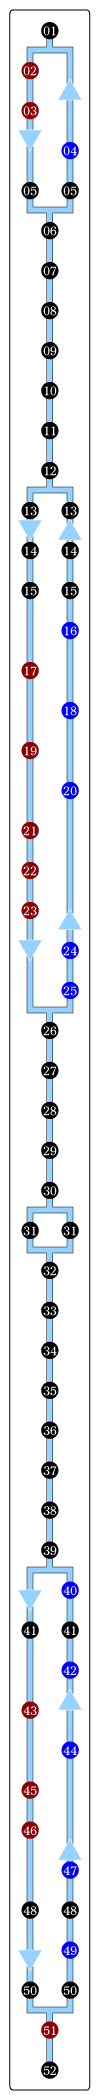 パリのバス52番　バス路線図